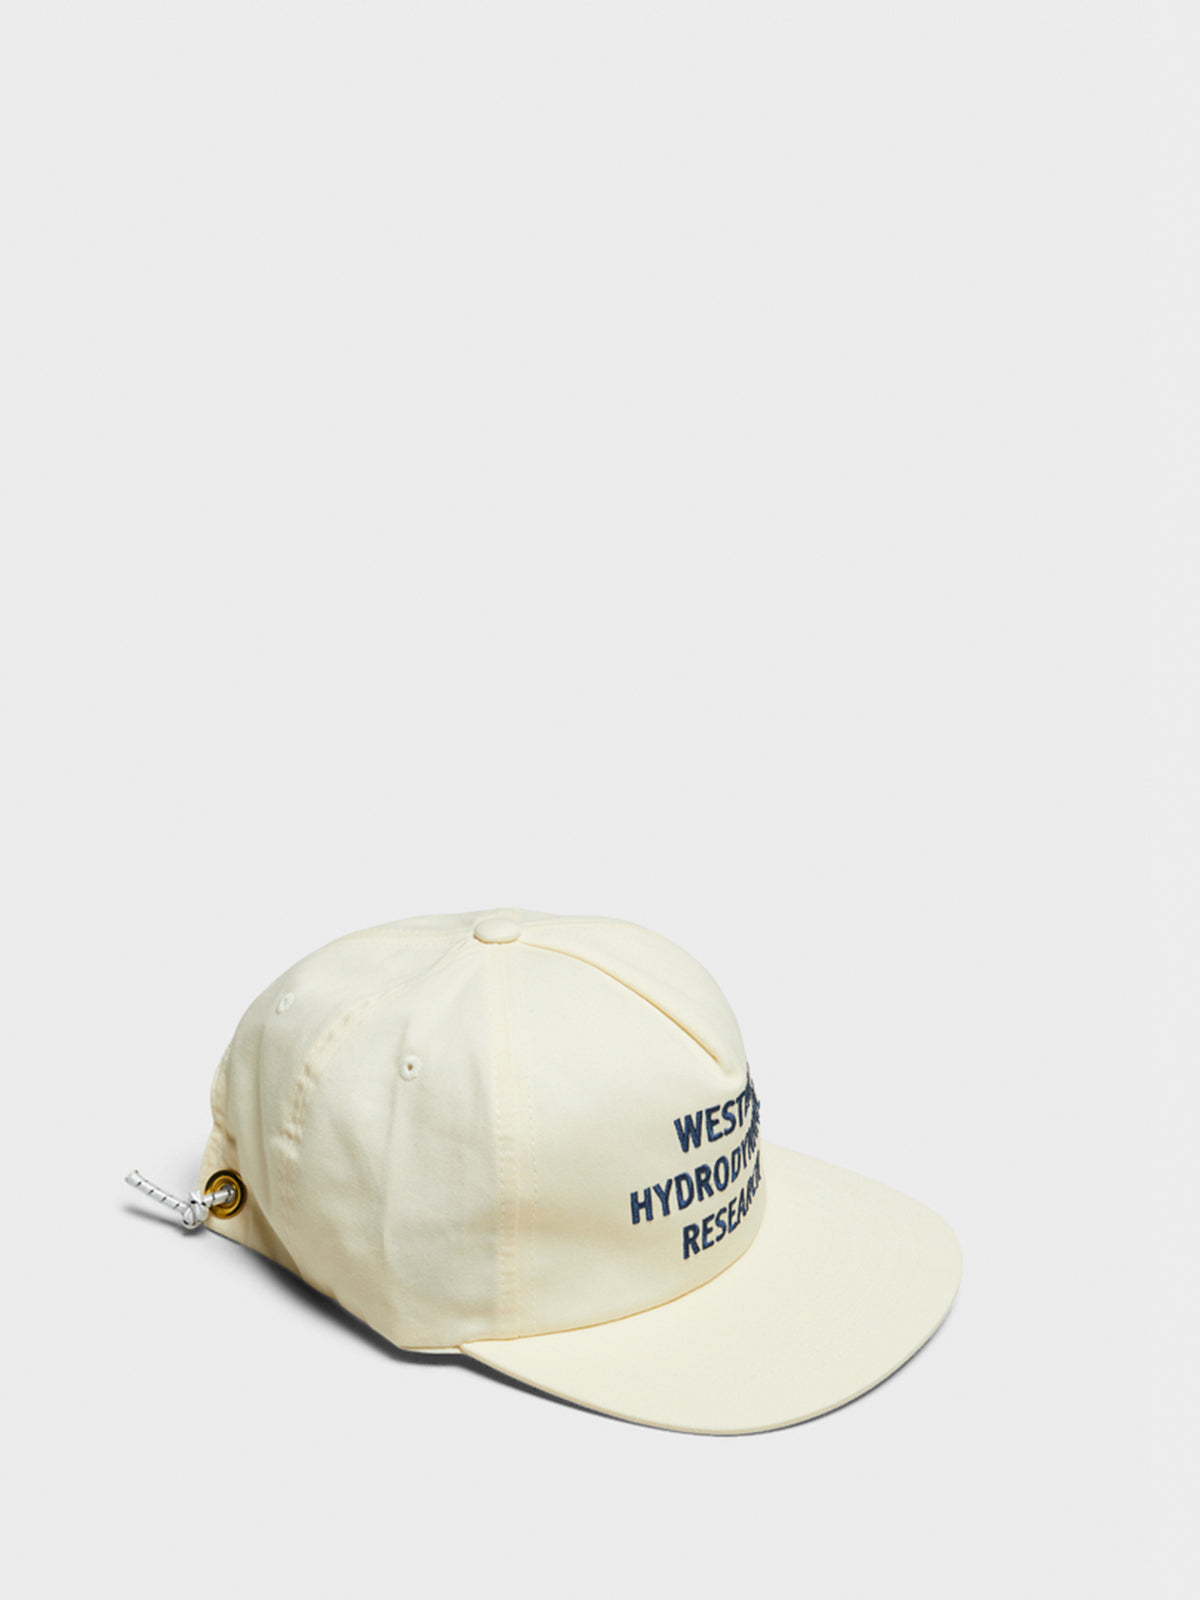 Promo Hat i Hvid og Navy